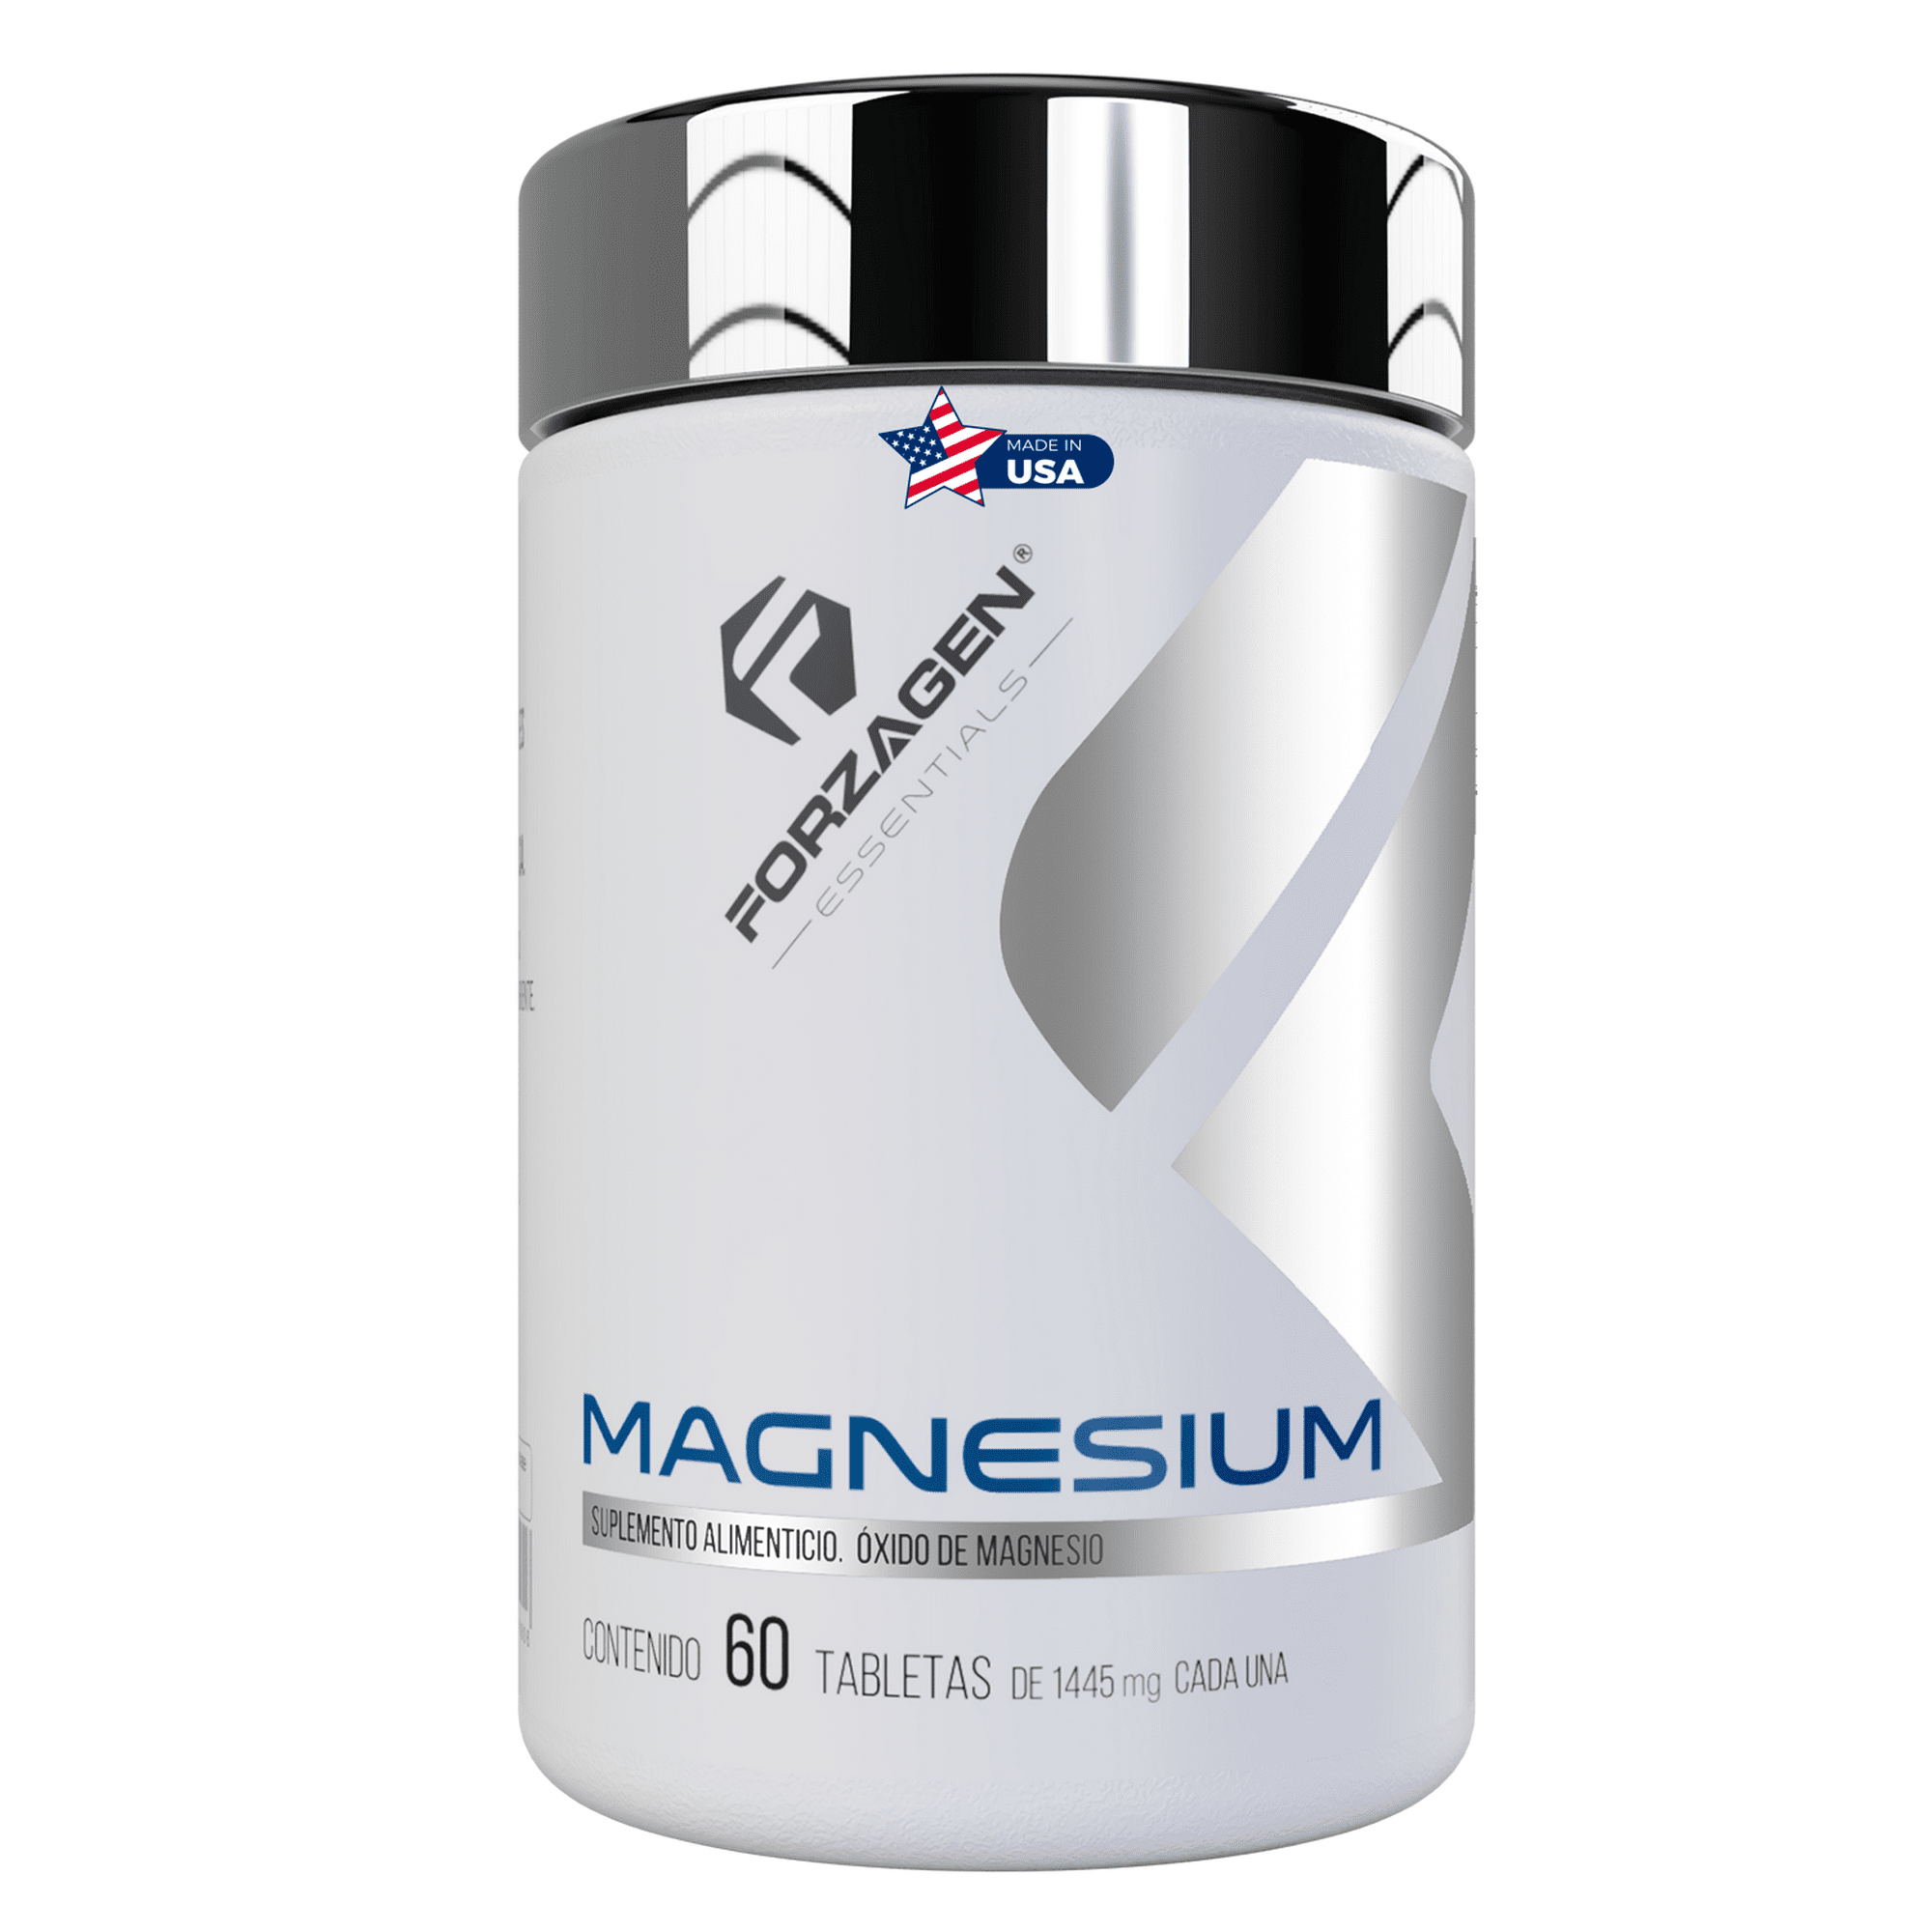 Citrato de magnesio forzagen essentials magnesium 60 tabletas forzagen magnesium